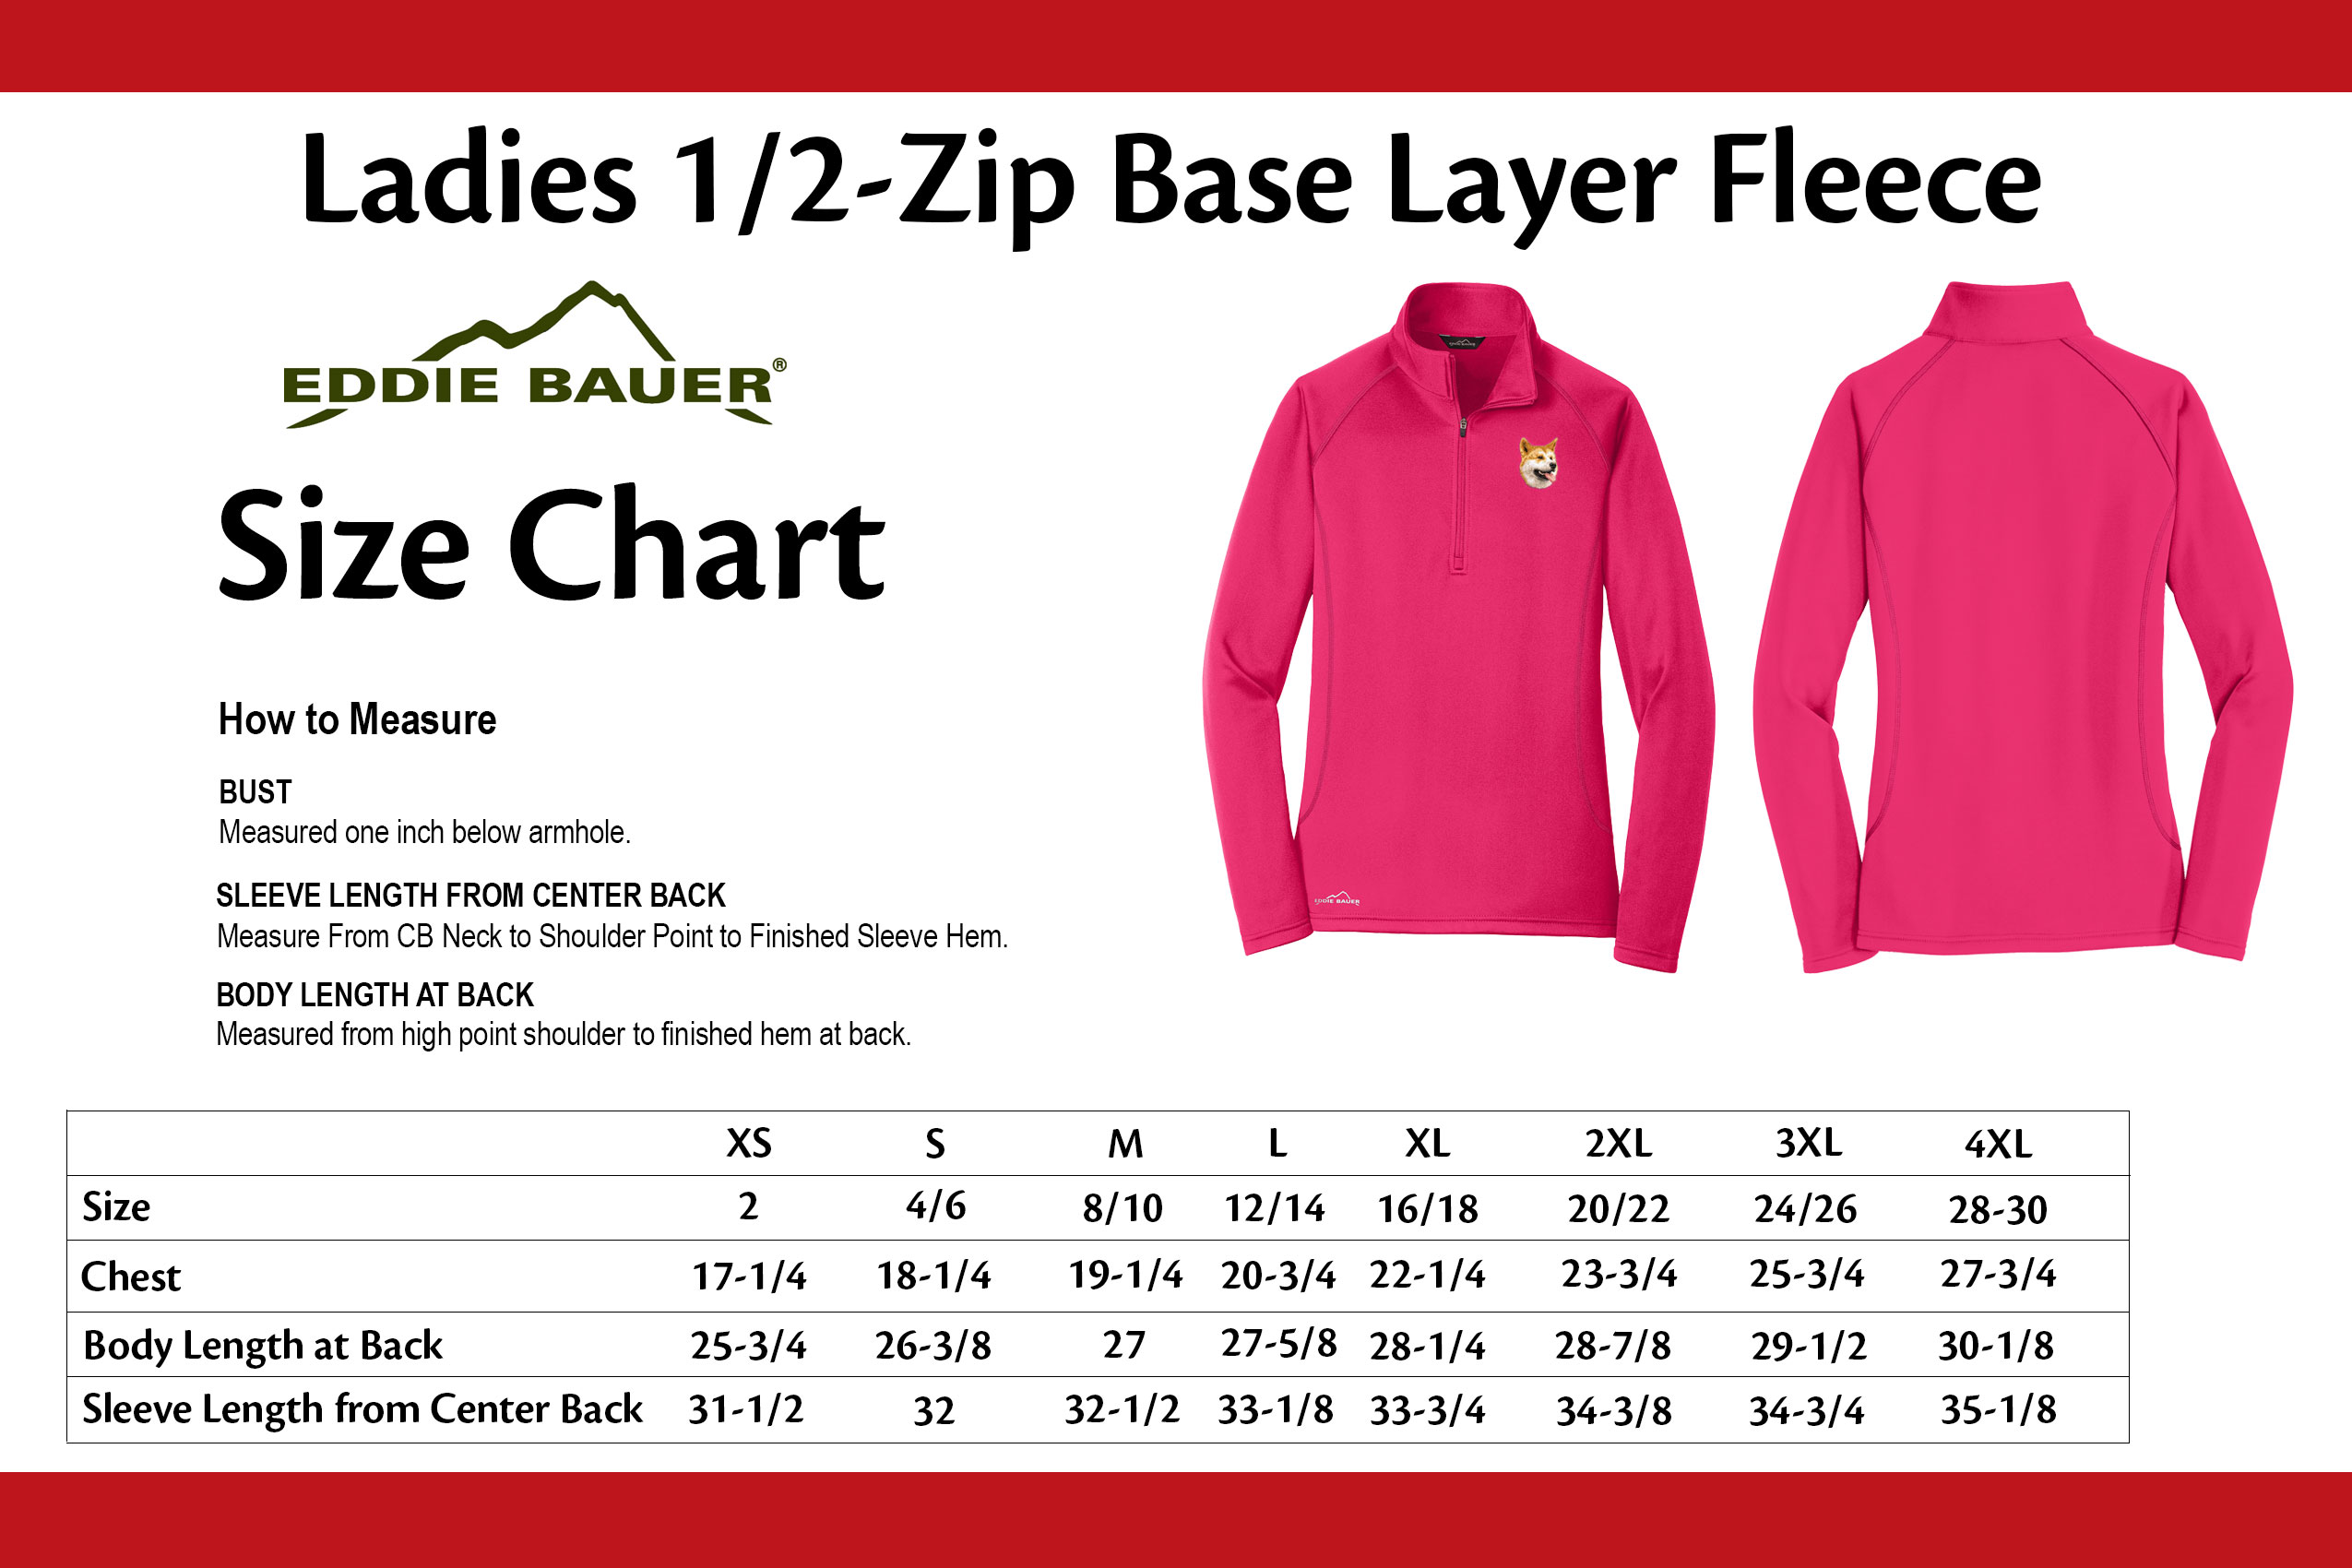 Eddie Bauer Shirt Size Chart